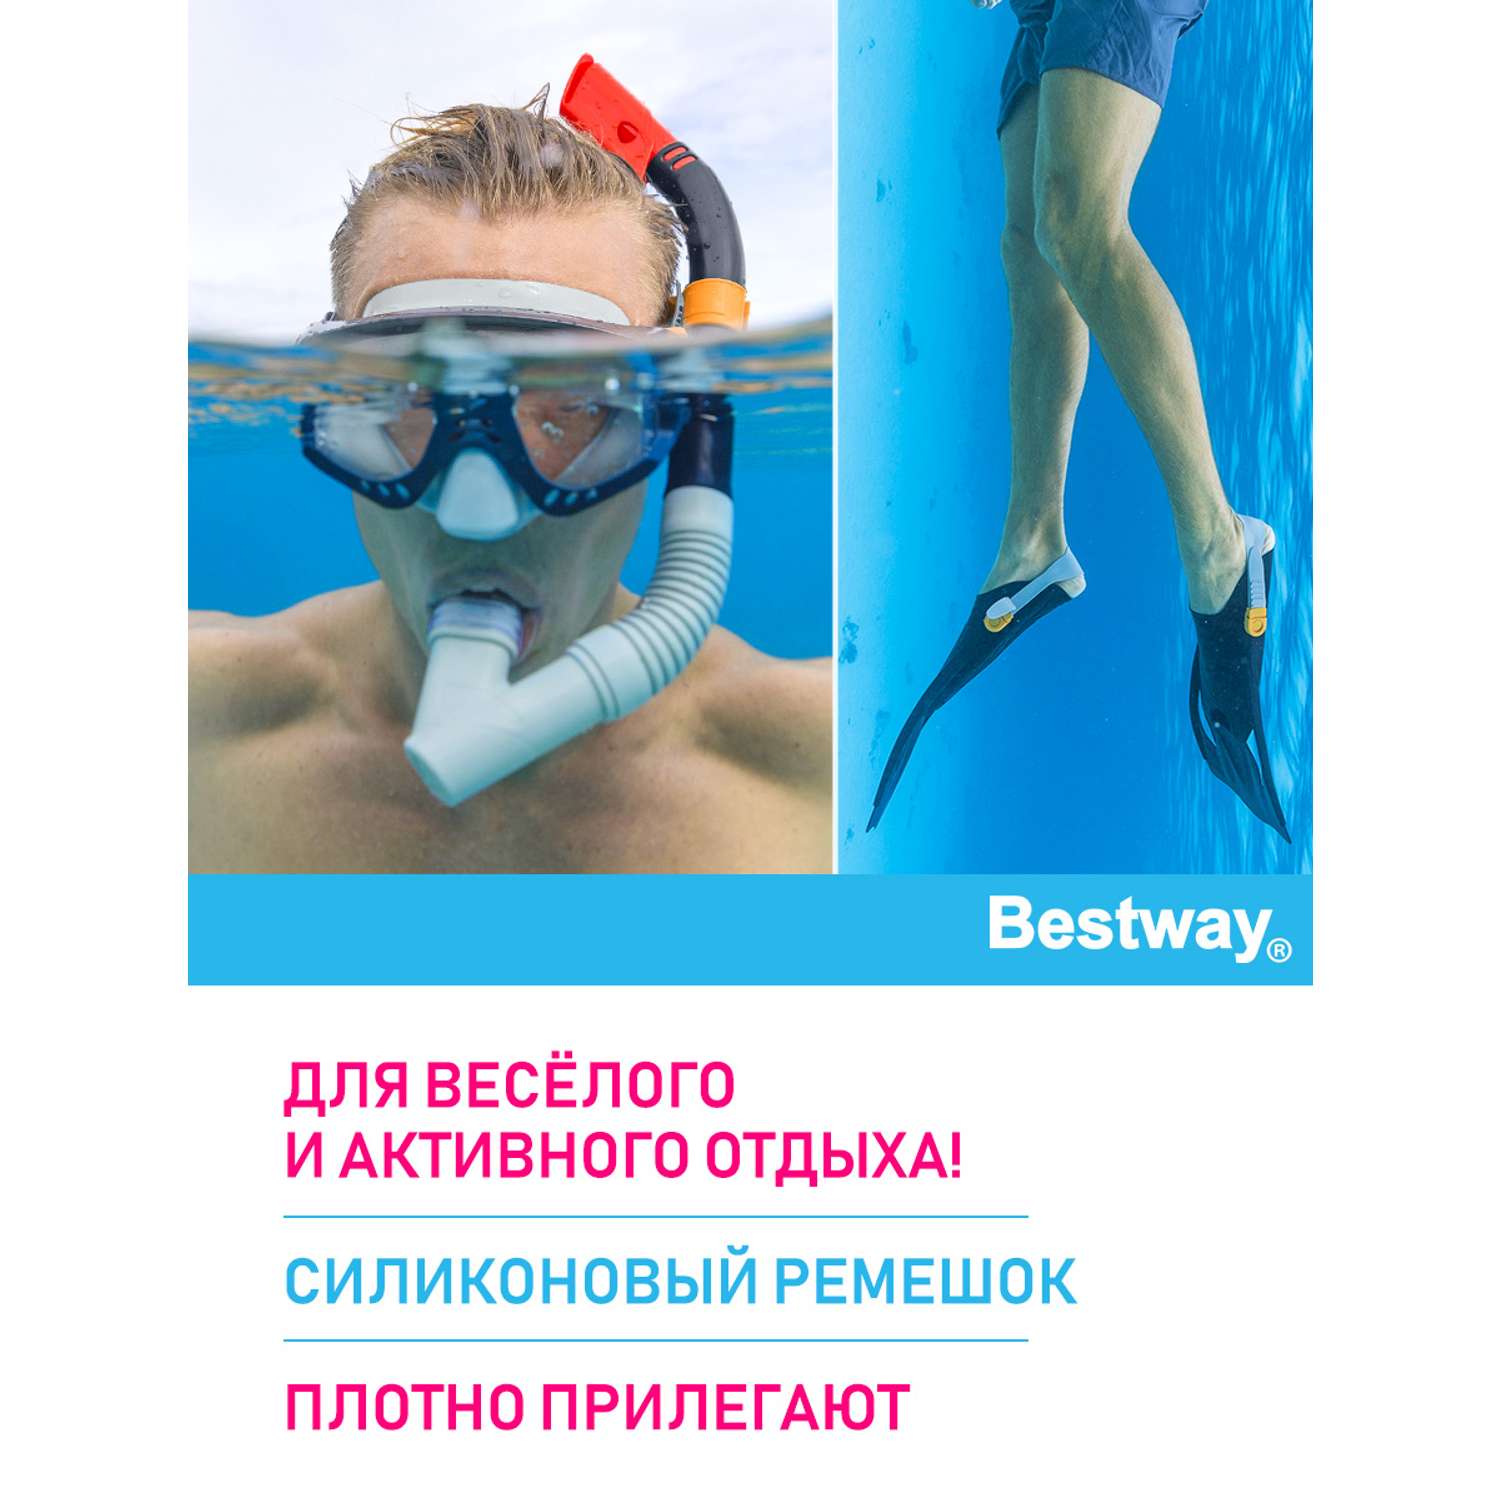 Набор для ныряния BESTWAY Bestway Meridian для взрослых маска+трубка+ласты Черный - фото 2